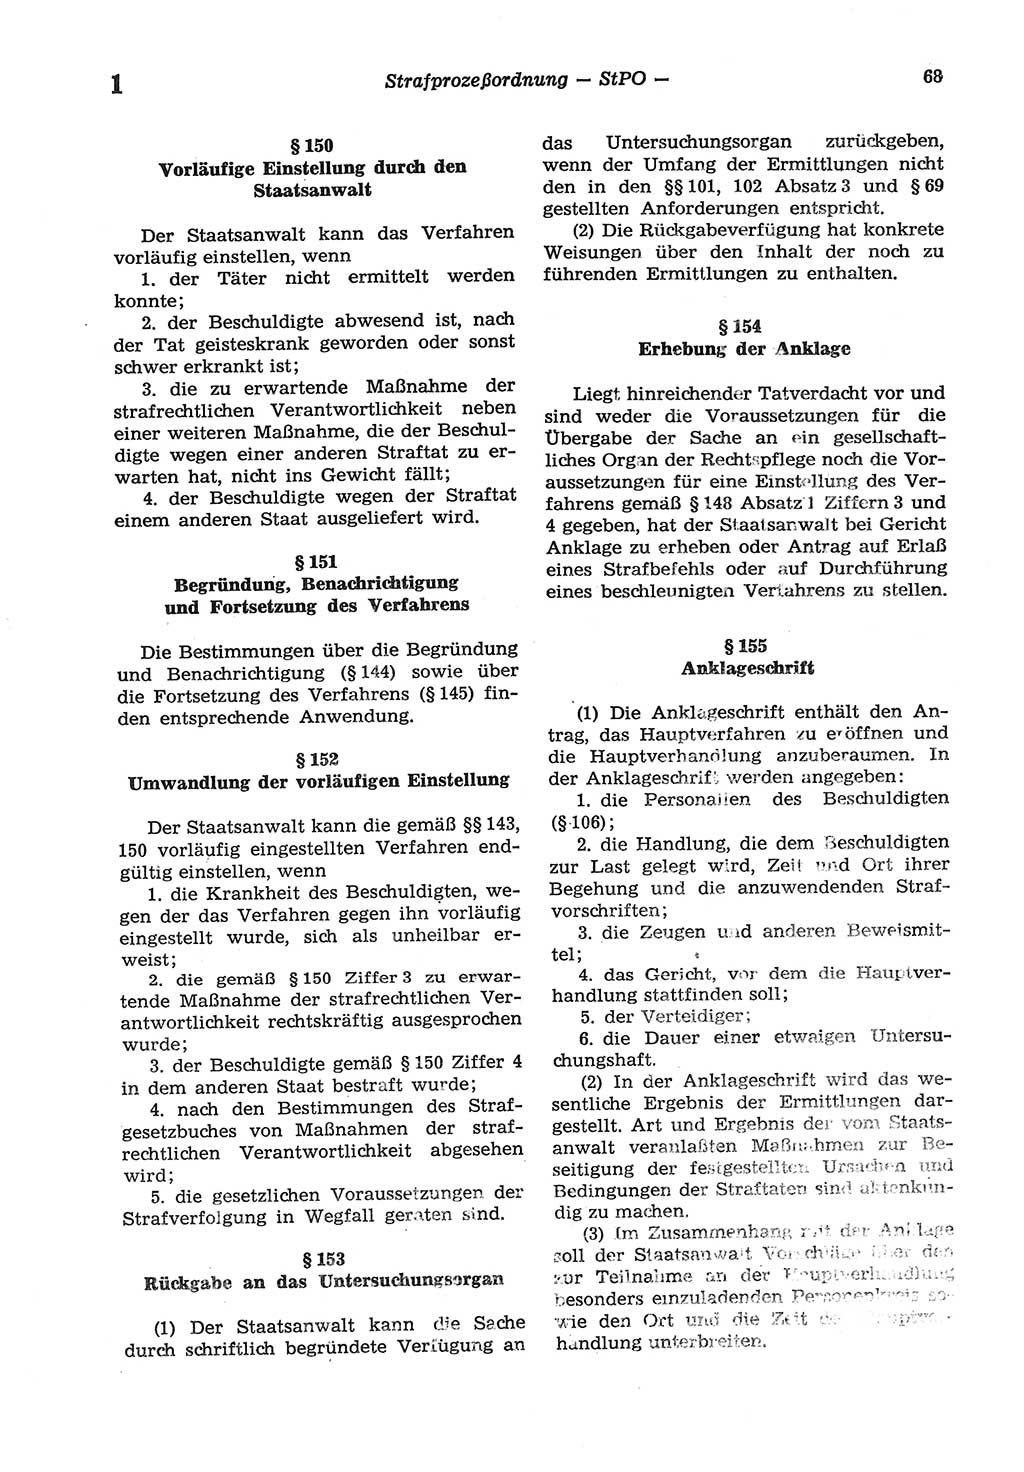 Strafprozeßordnung (StPO) der Deutschen Demokratischen Republik (DDR) sowie angrenzende Gesetze und Bestimmungen 1977, Seite 68 (StPO DDR Ges. Best. 1977, S. 68)